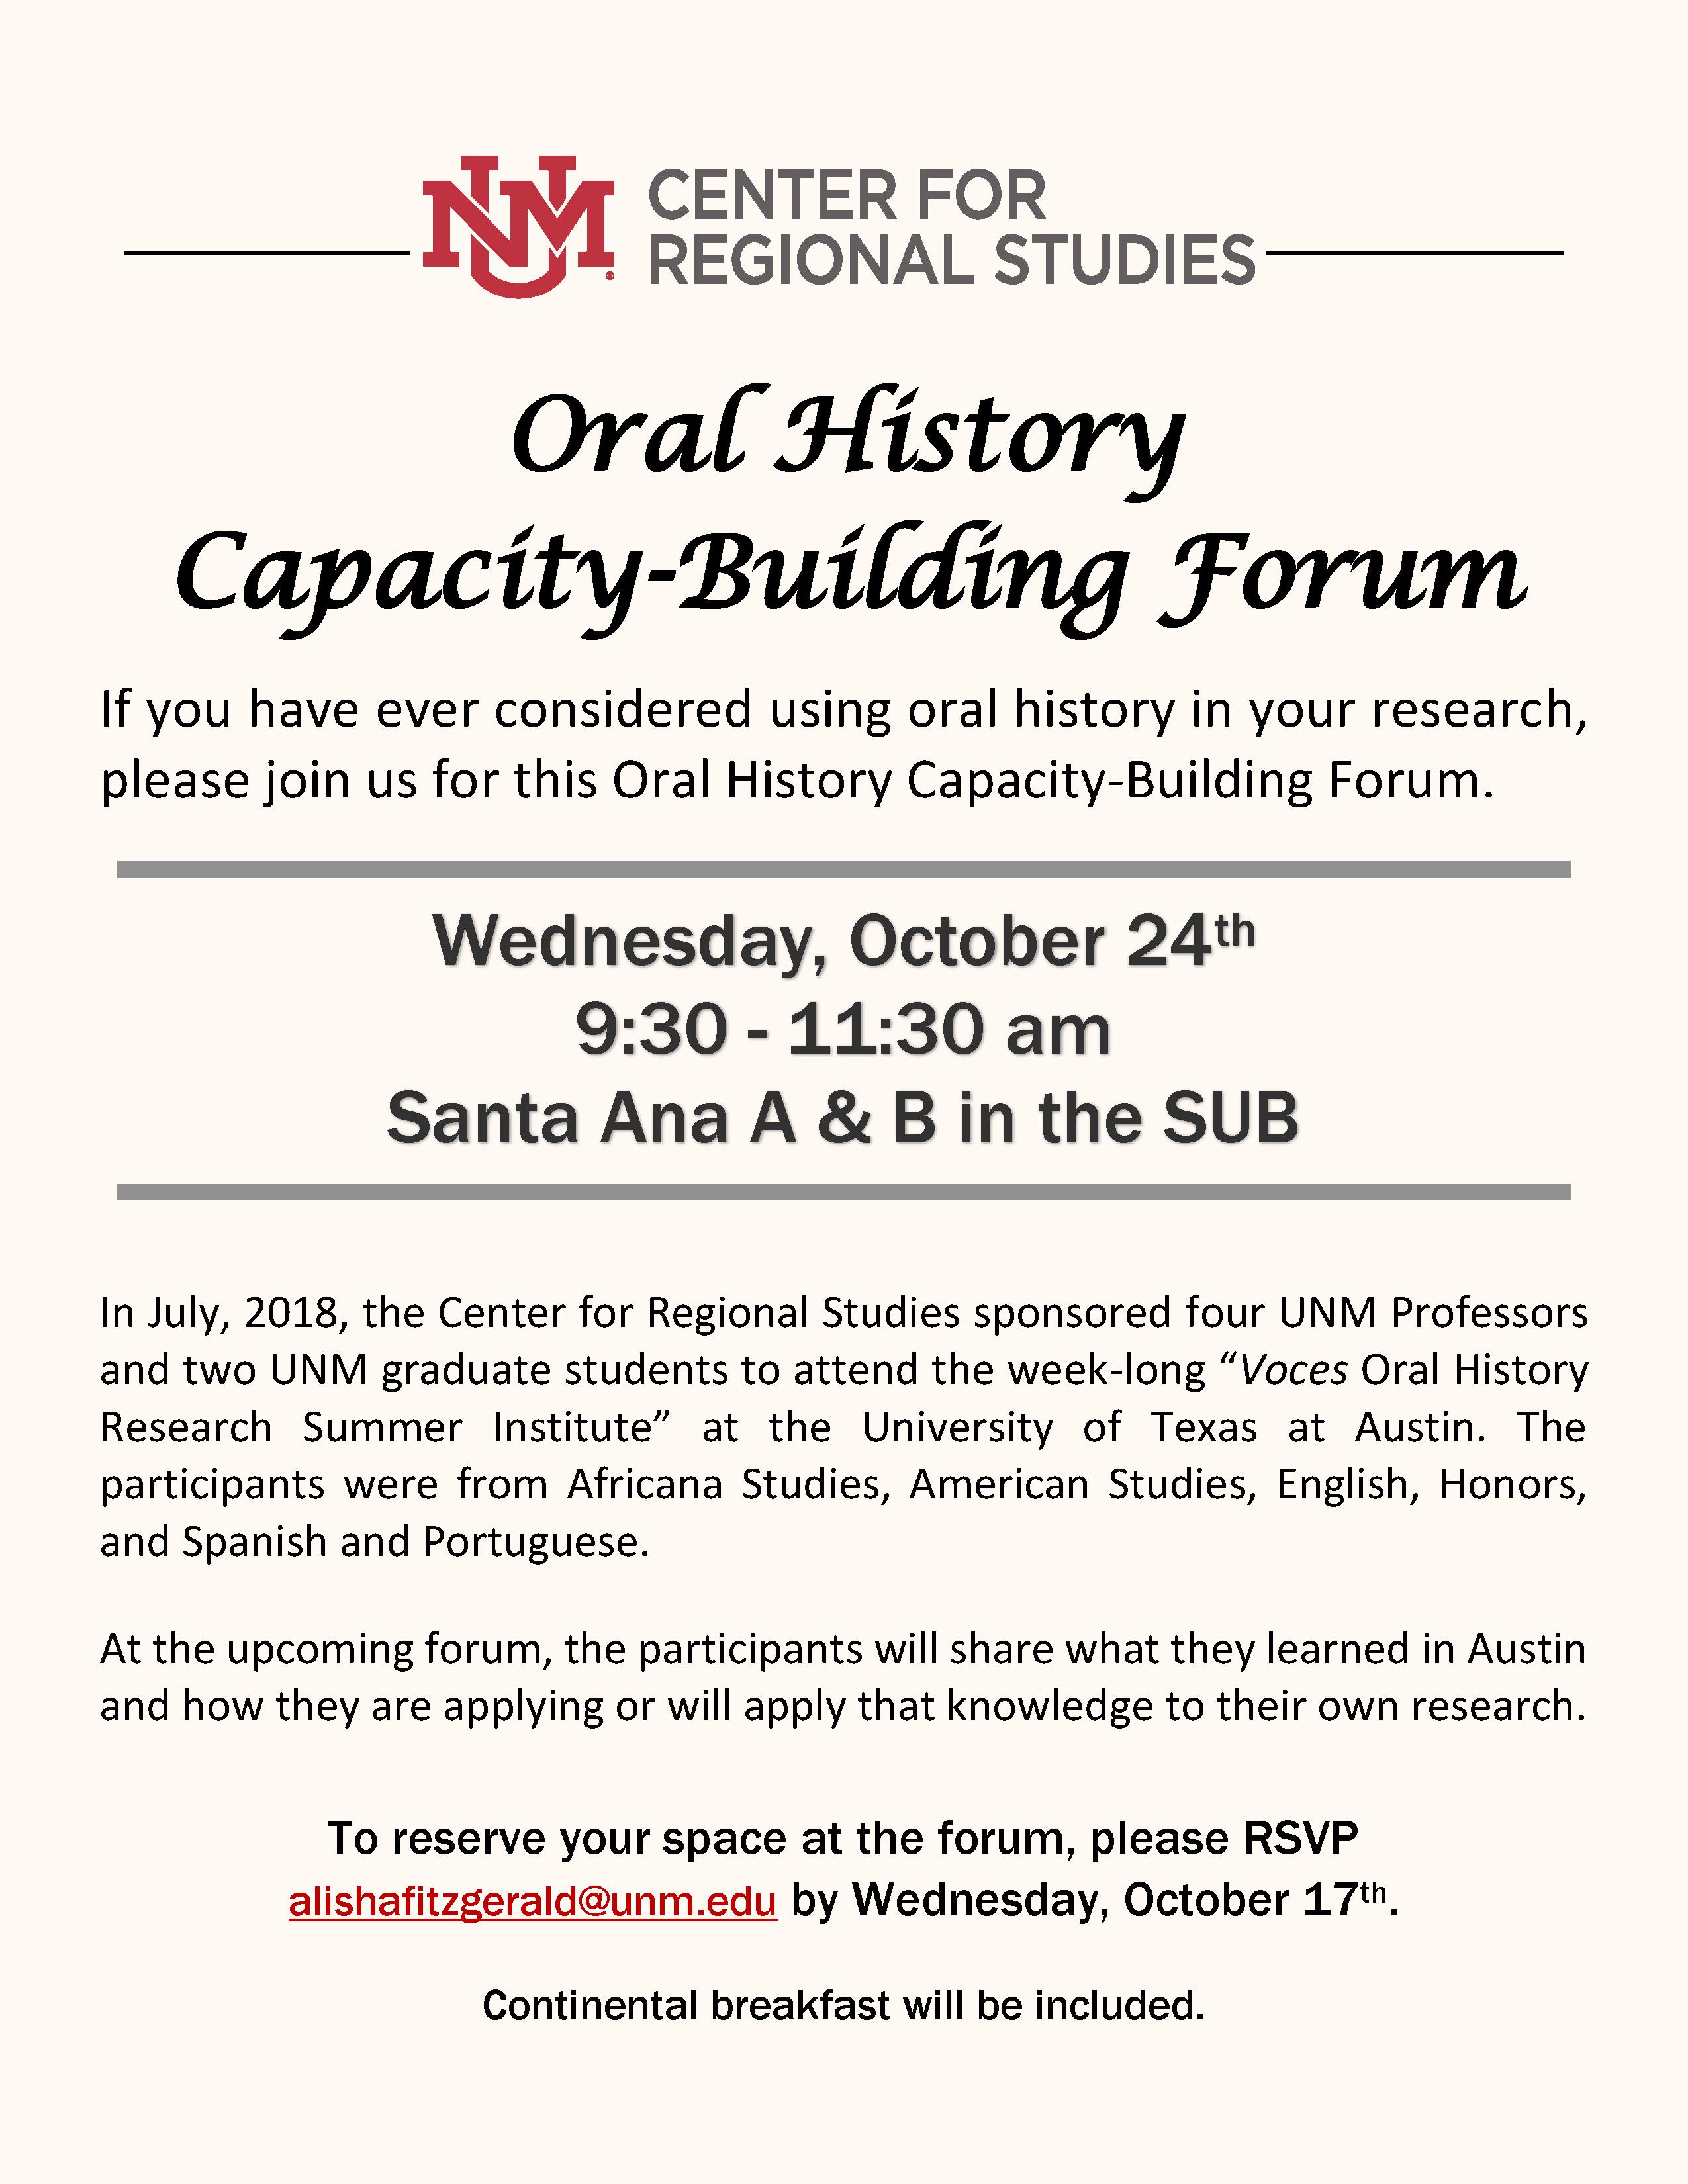 Oral History Capacity-Building Forum Flyer